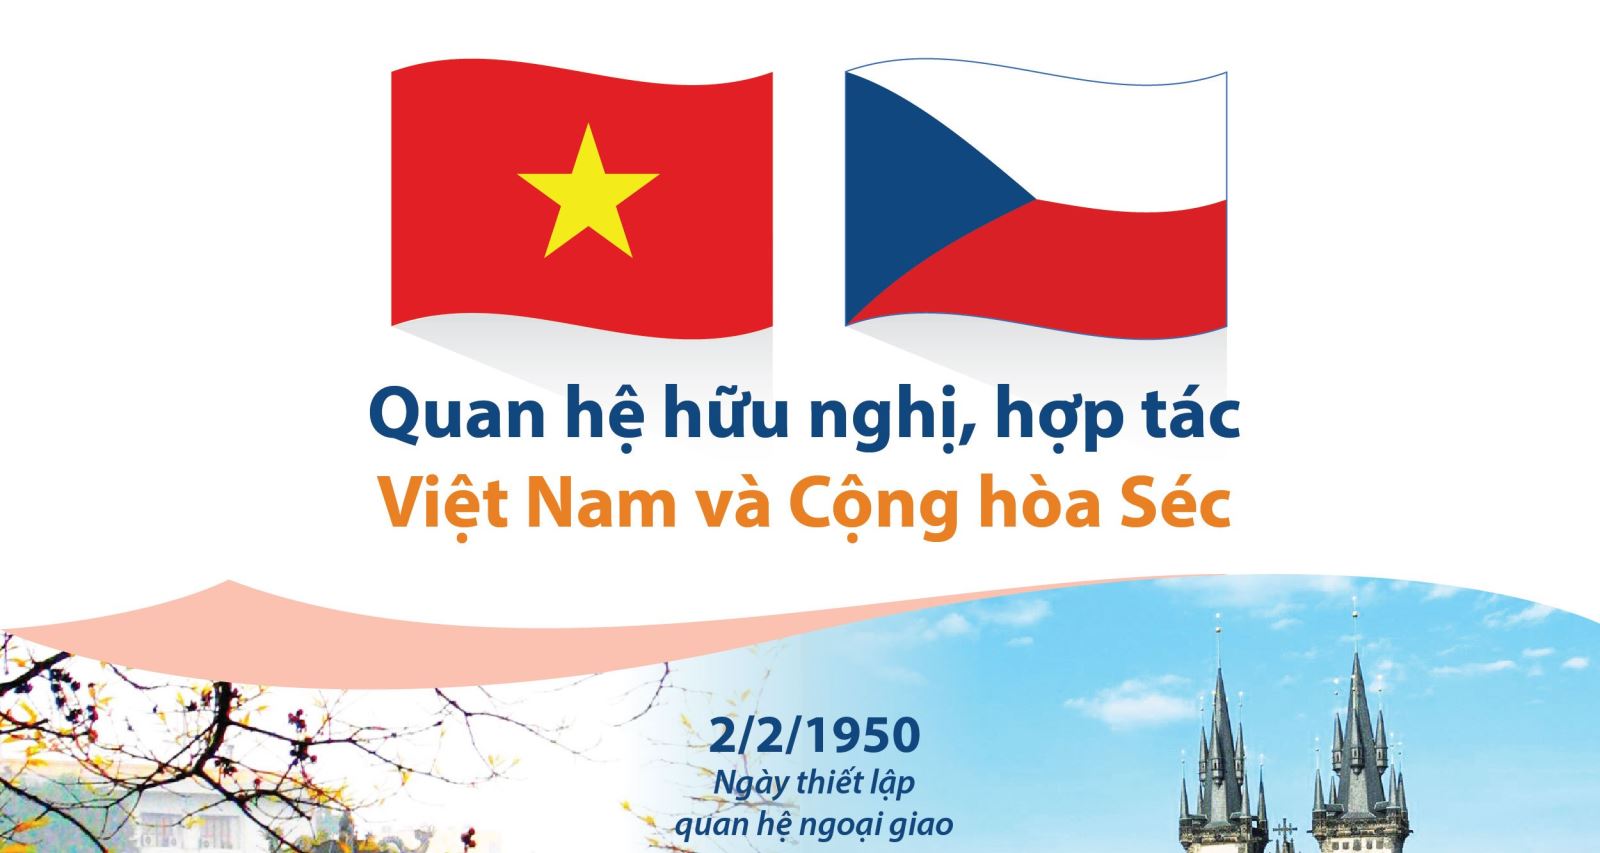 Đại sứ Việt Nam: Chào mừng đại sứ Việt Nam đến với năm 2024! Hãy cùng xem hình ảnh về sự kiện chính thức đón nhận đại sứ mới tại quốc gia bạn đang phục vụ. Với sự xuất hiện của đại sứ Việt Nam, chúng ta sẽ cùng đẩy mạnh hợp tác và giao lưu văn hóa giữa hai nước, tạo nên những thành tựu mới.